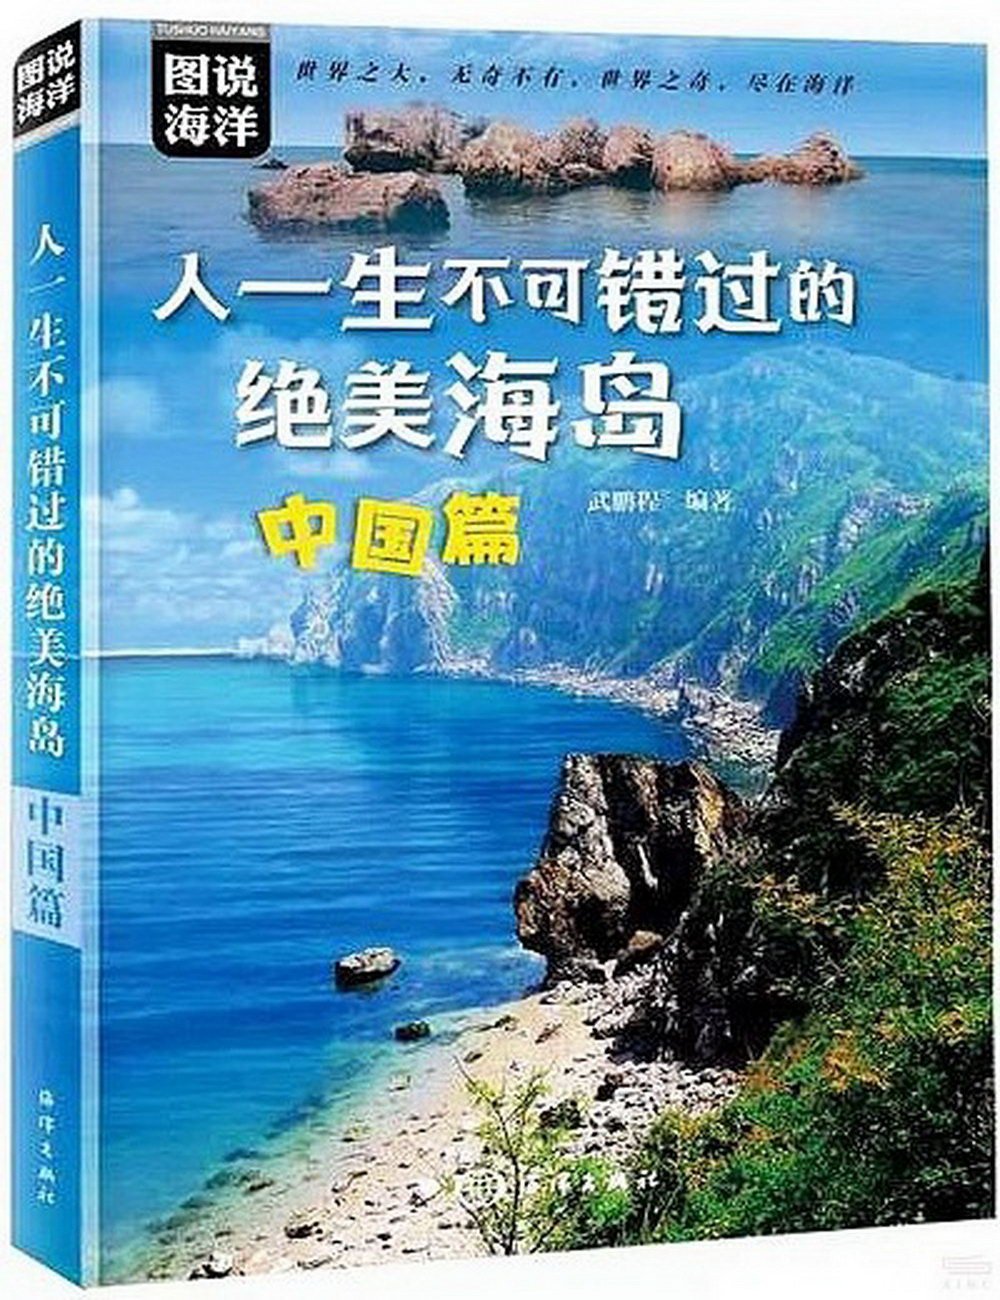 人一生不可錯過的絕美海島：中國篇